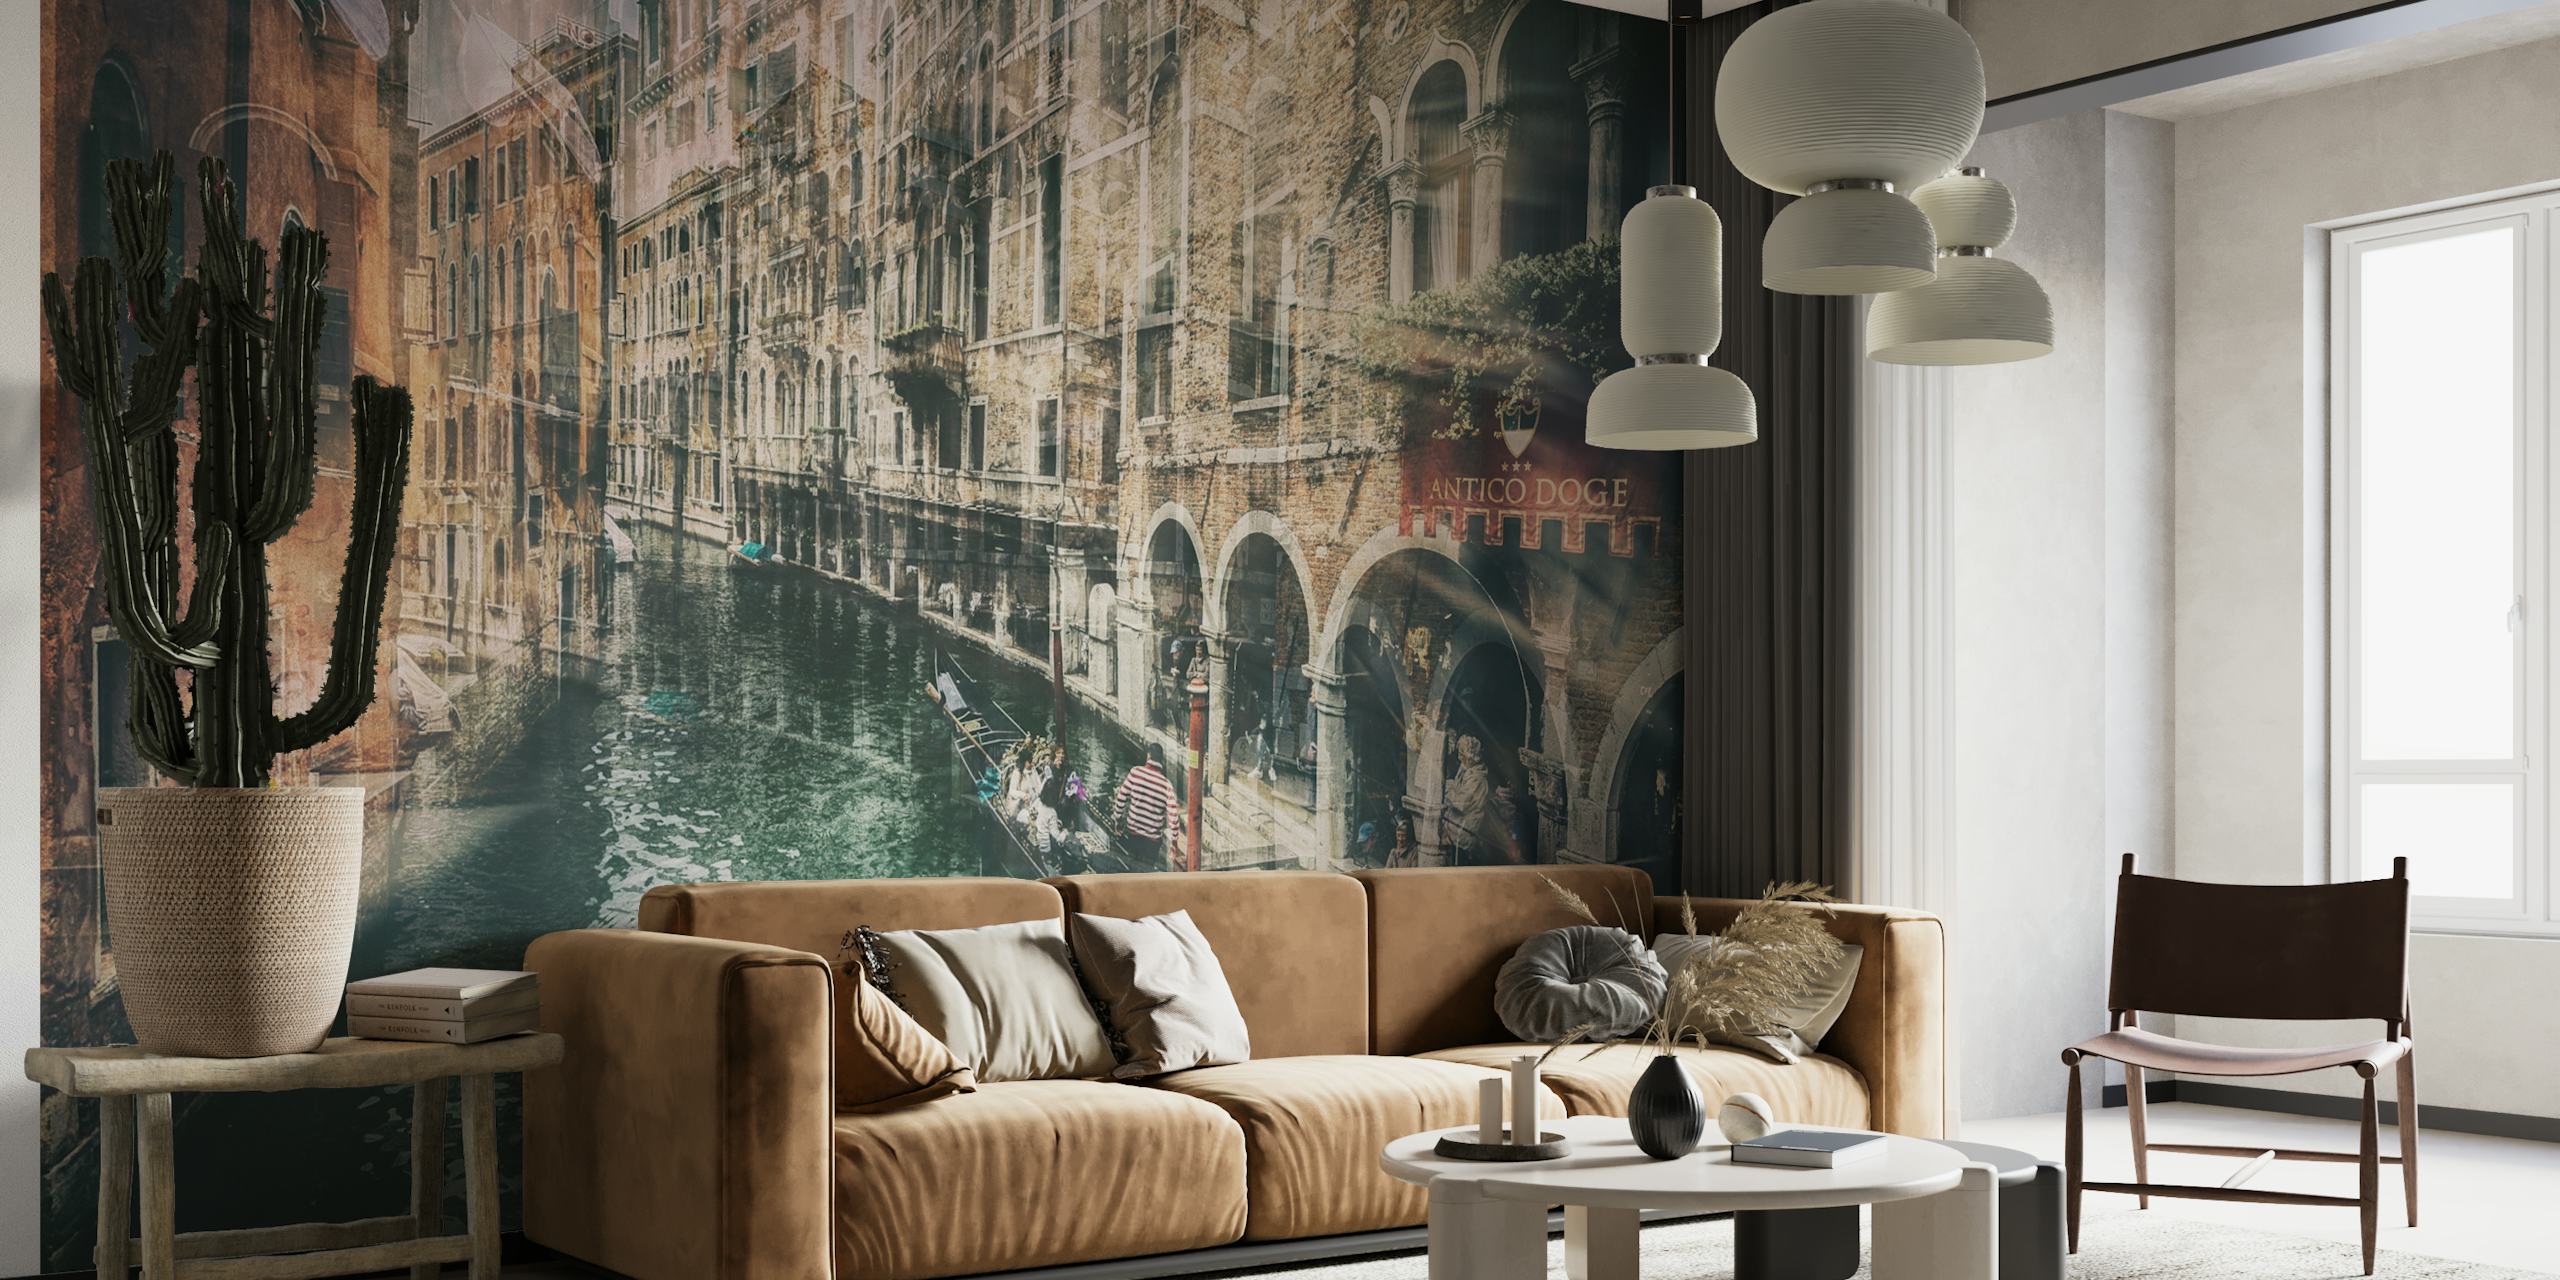 Vintage-tyylinen seinämaalaus, joka kuvaa venetsialaista kanavaa ja historiallista arkkitehtuuria